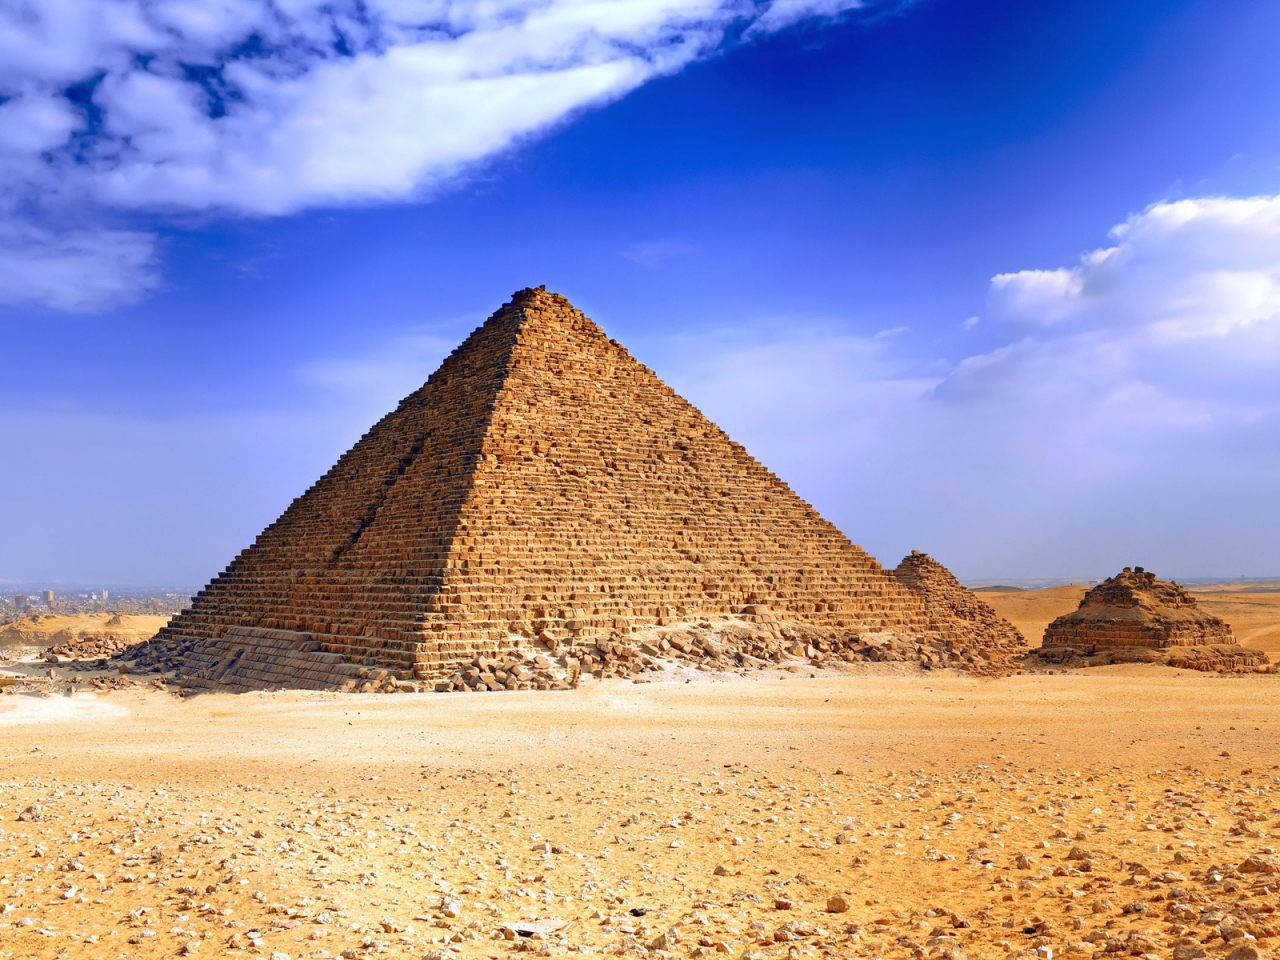 Pyramids for 1280 x 960 resolution